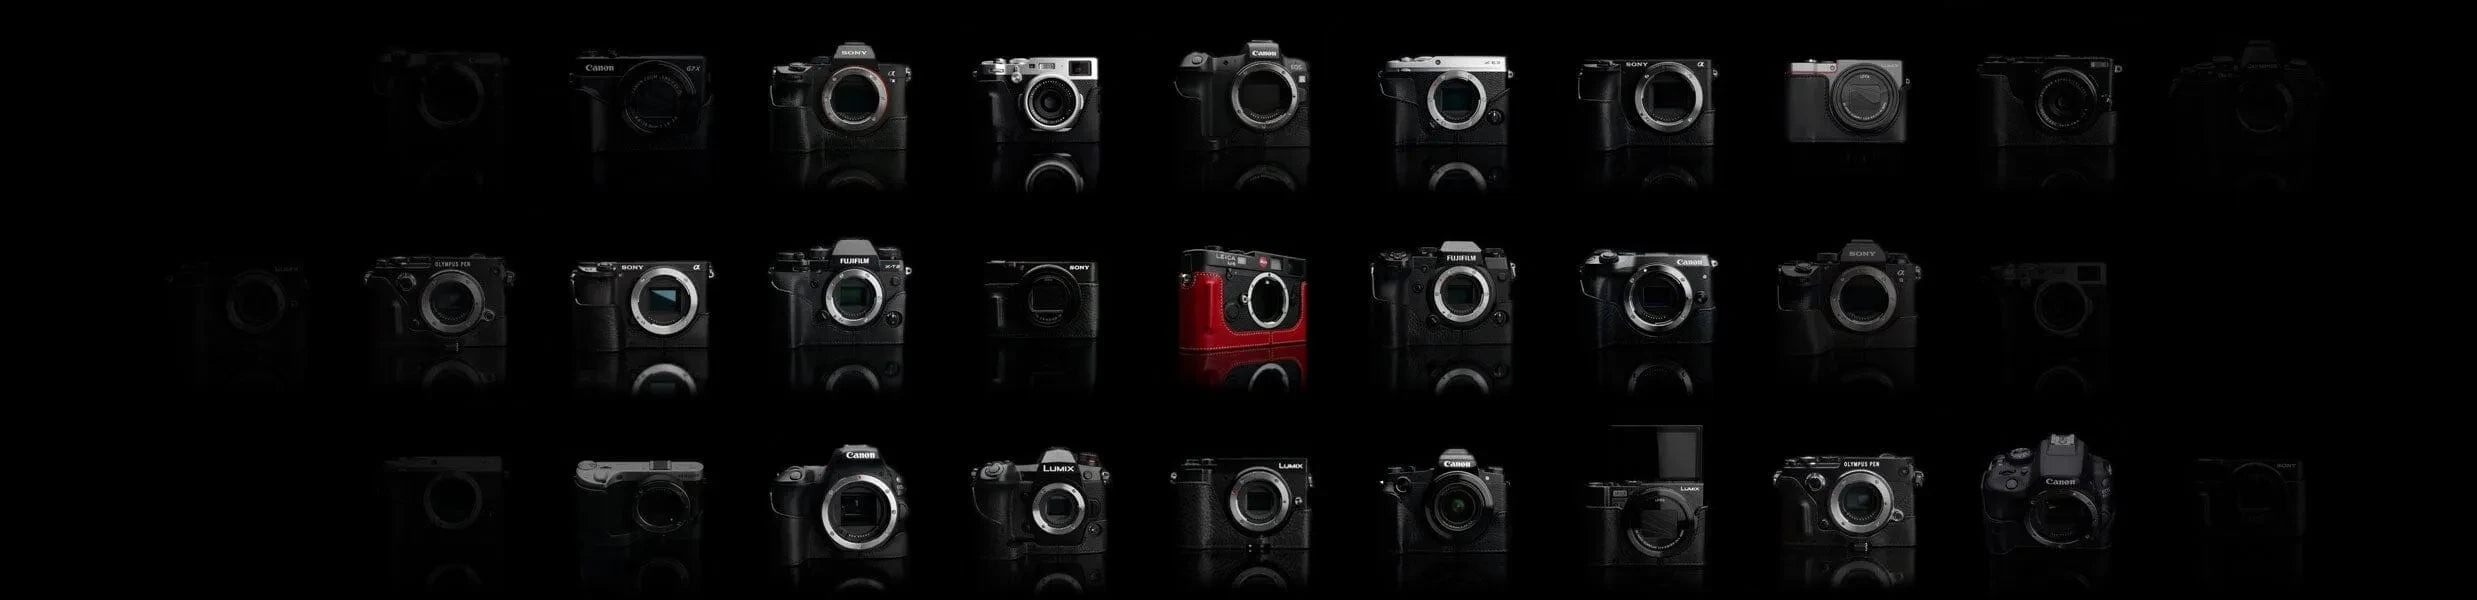 Kamerataschen aus Leder von GARIZ Design an verschiedenen Kameras vor schwarzem Hintergrund